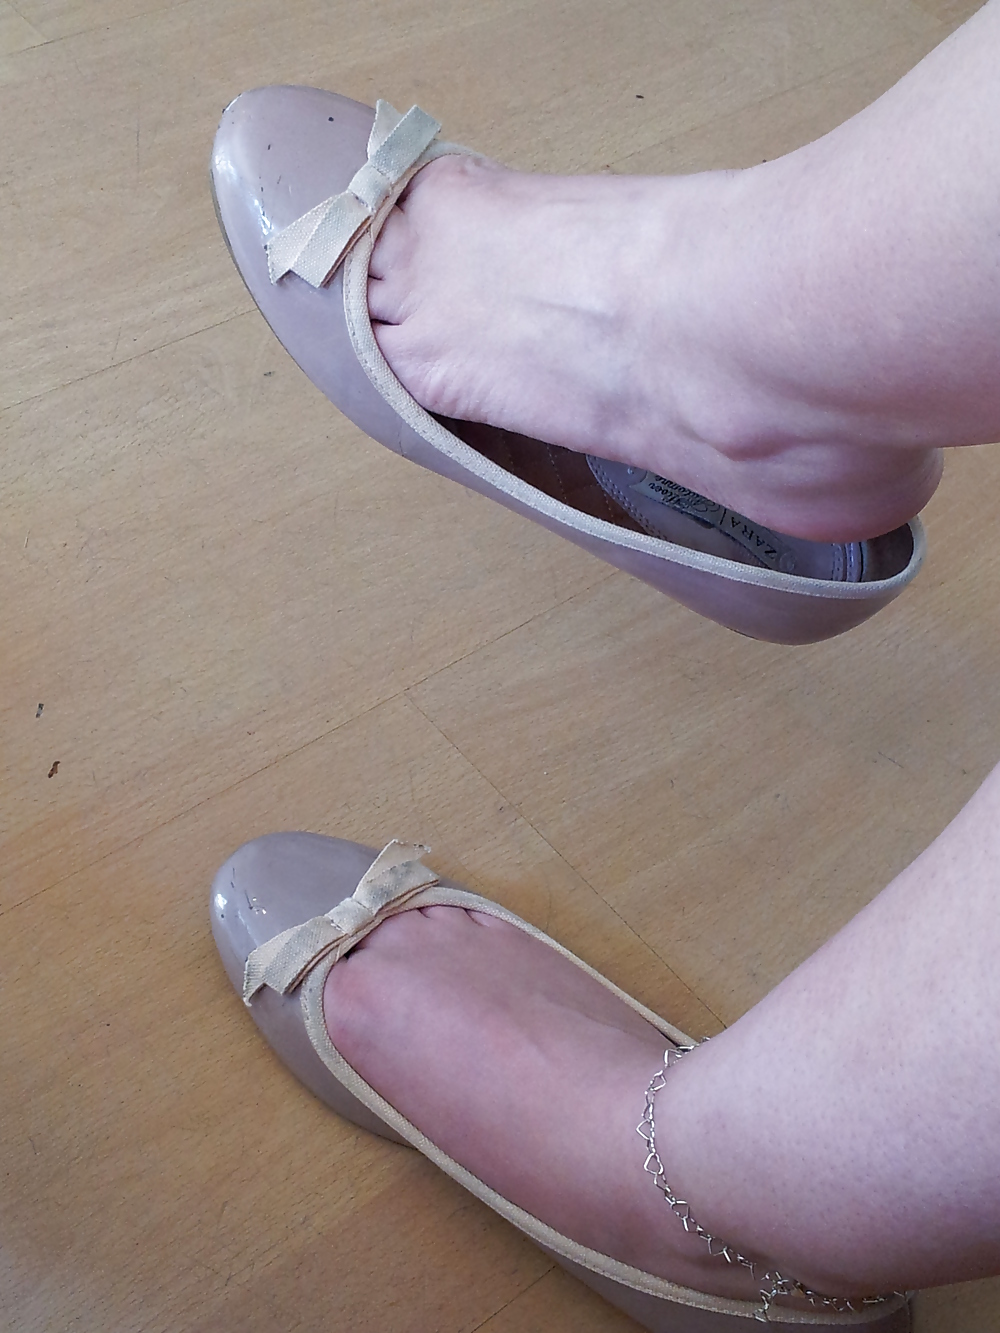 Wifes bien desgastado desnudo falta bailarinas flats shoes3
 #19059037